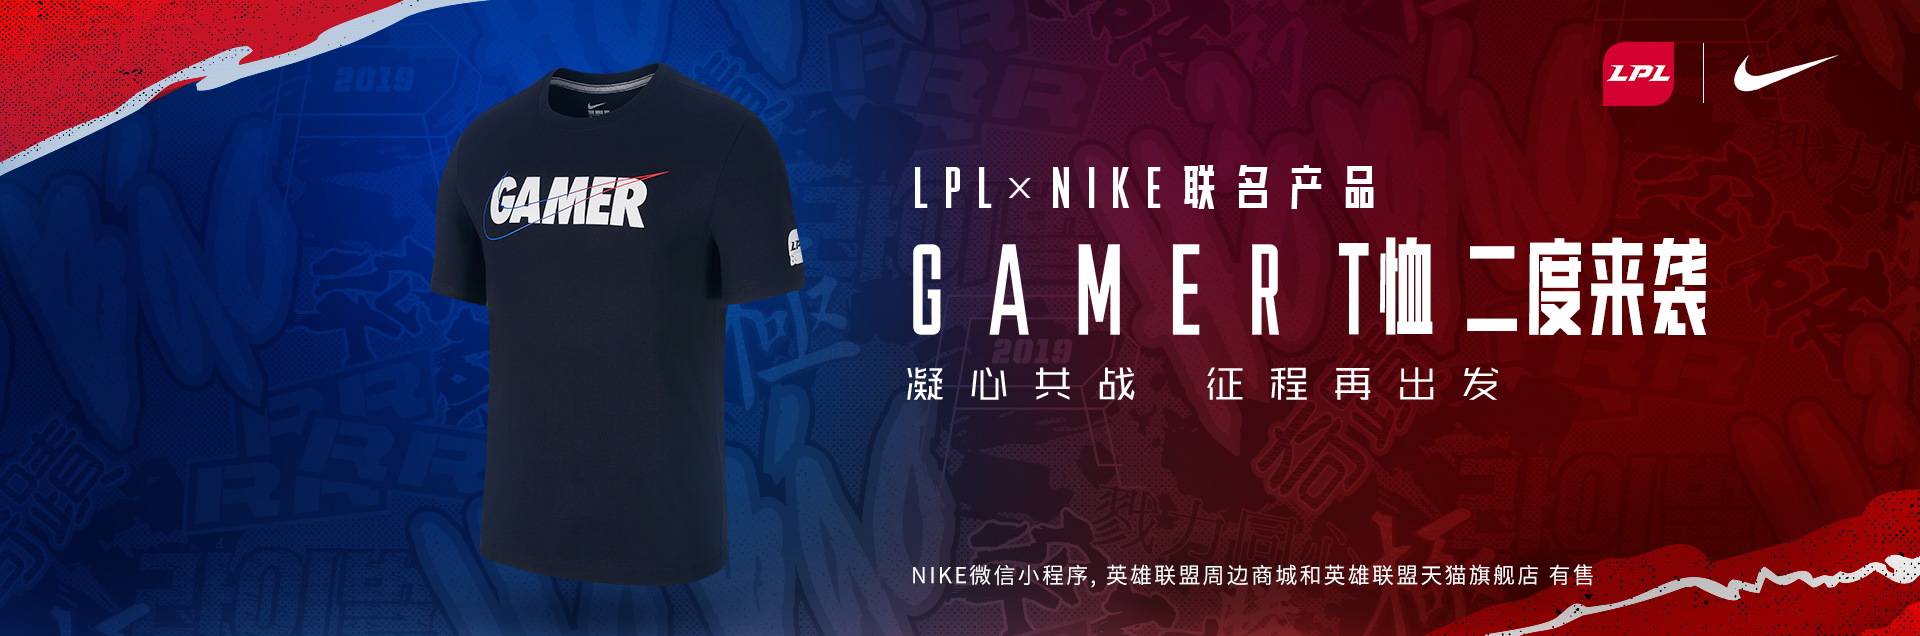 应援LPL凝心共战2019洲际系列赛亚洲对抗赛 - Gamer T恤重新上架